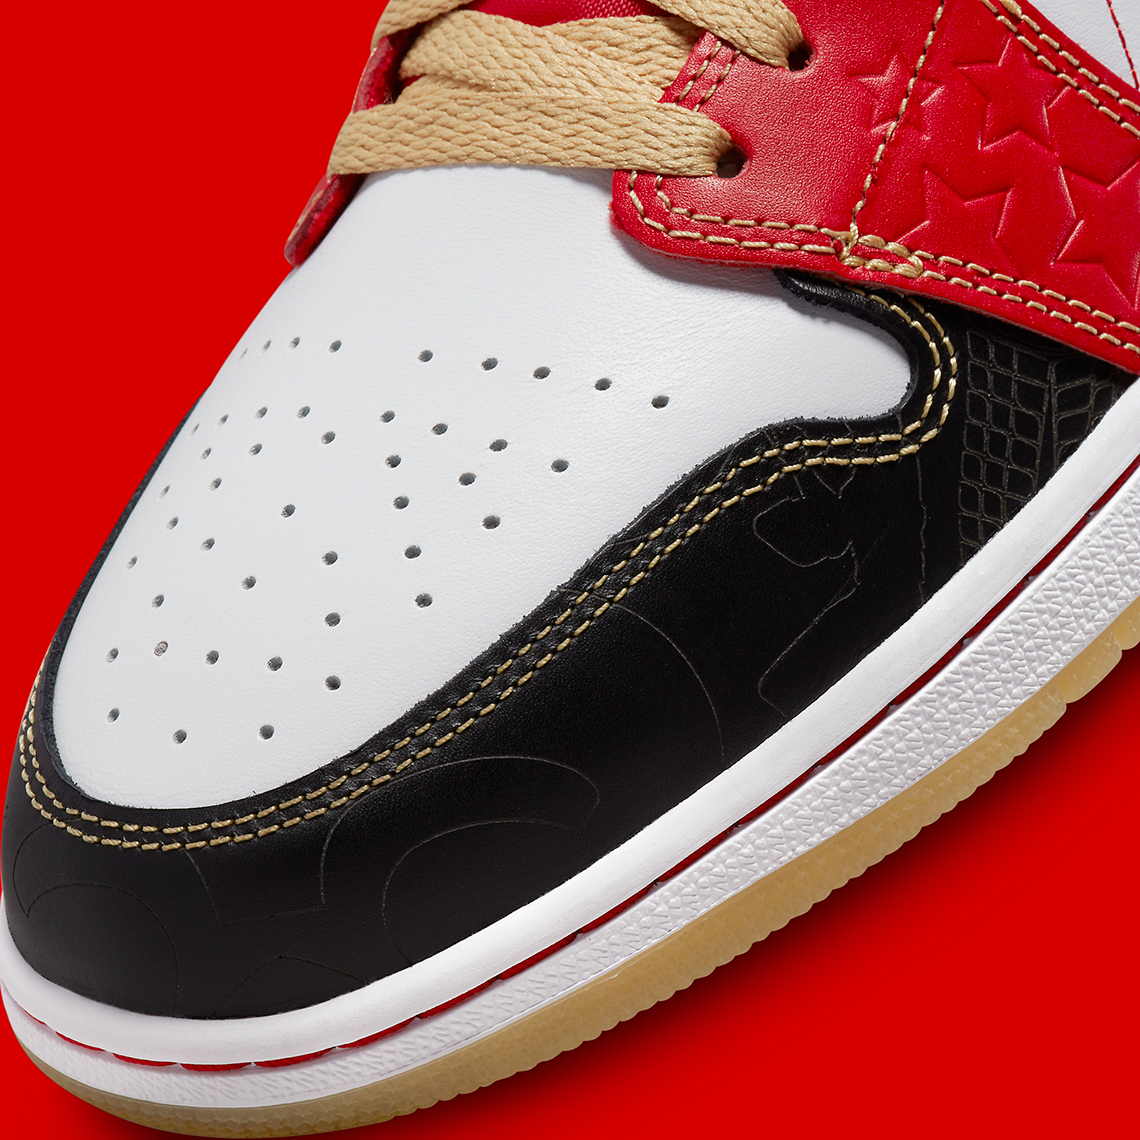 Nike Air Jordan 1 Low Hemp White Xing Qi 2022 Dv0576 176 Release Date 6